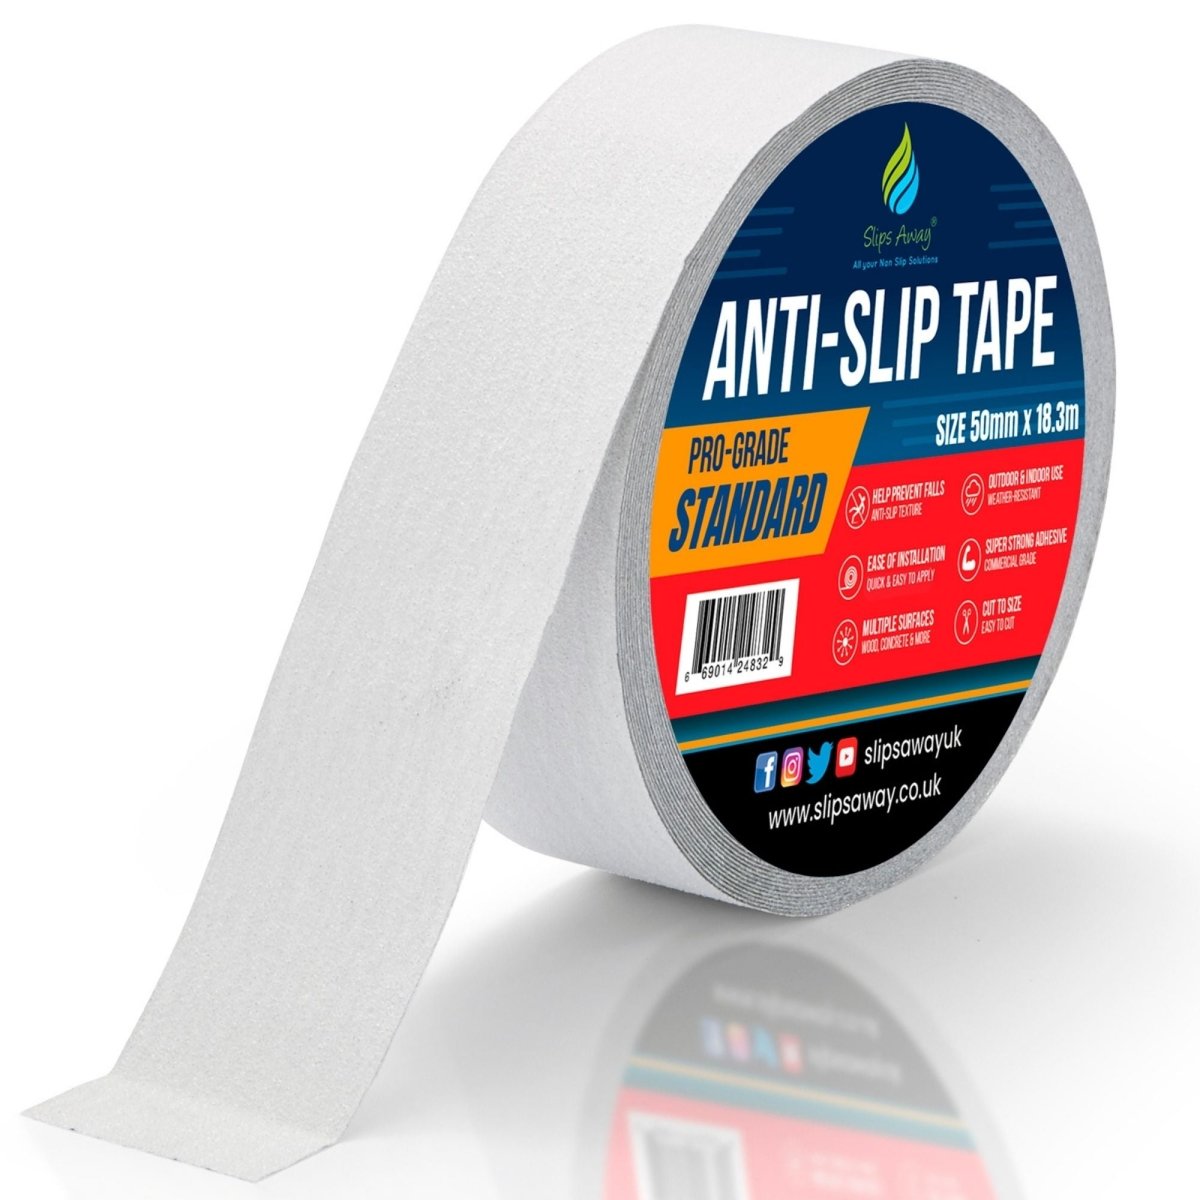 White Anti Slip Tape Rolls Standard Grade - Slips Away - Non slip tape - 50mm x 18.3m